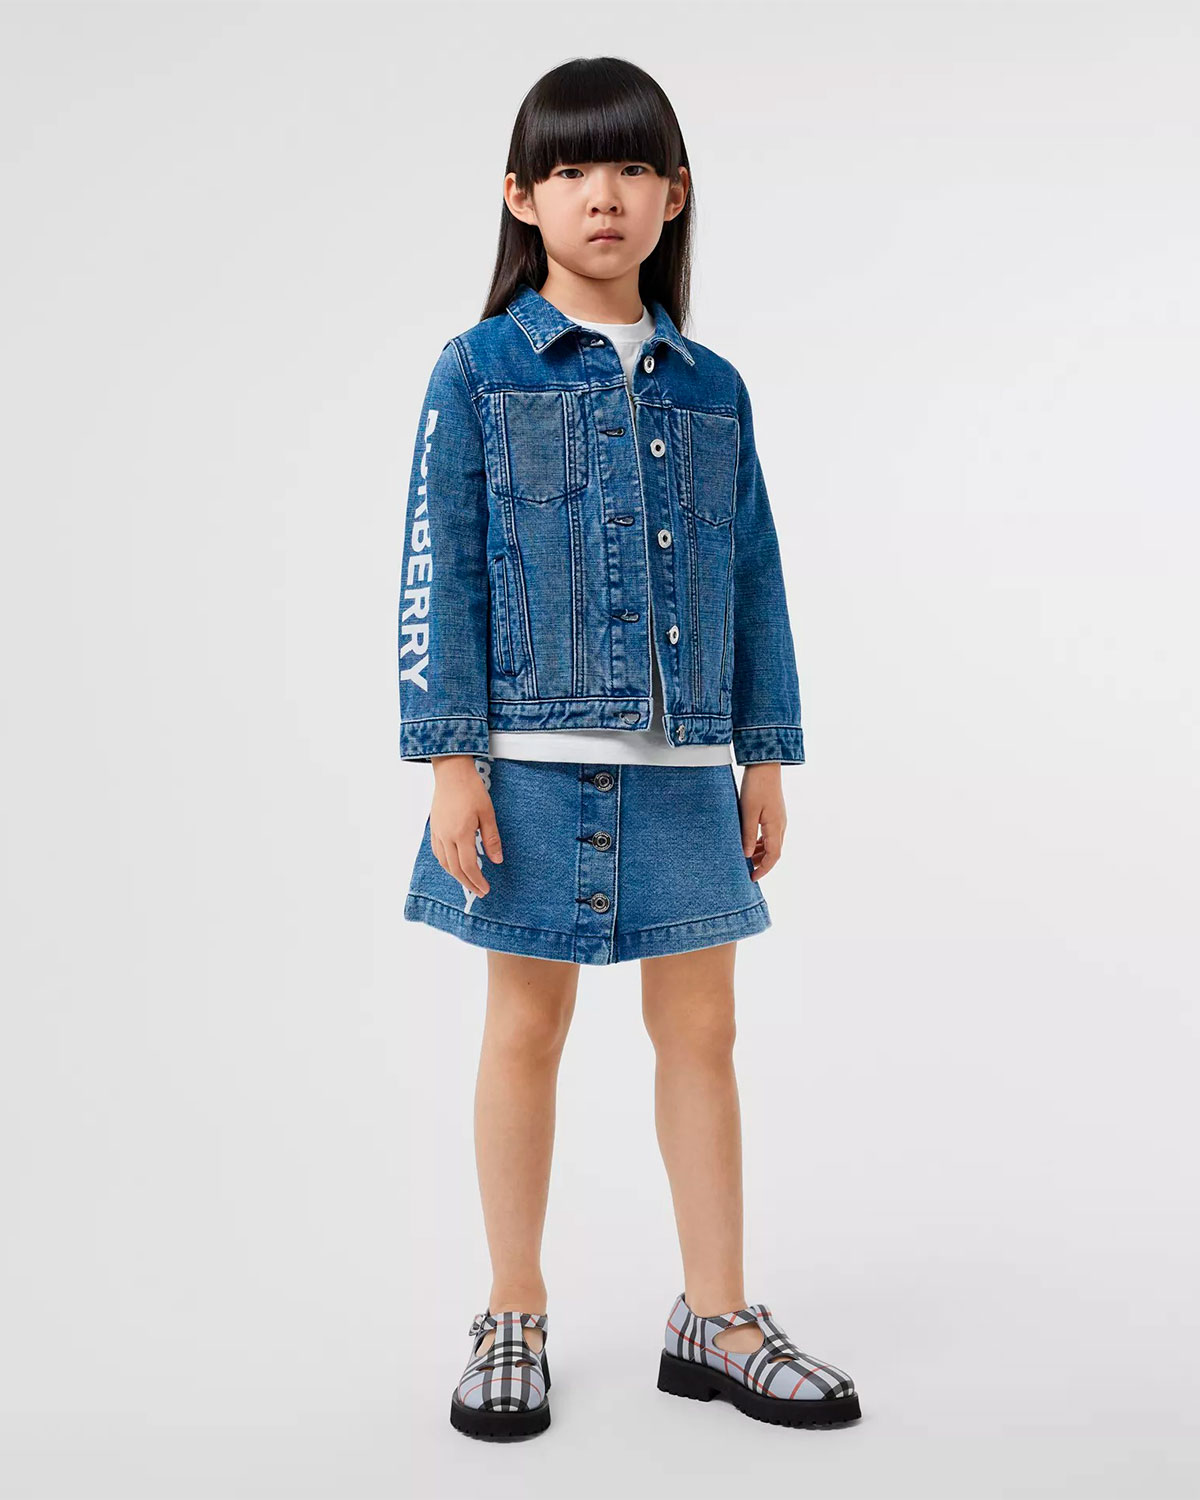 Джинсовая юбка с логотипом Burberry детская, размер 116, цвет синий - фото 2